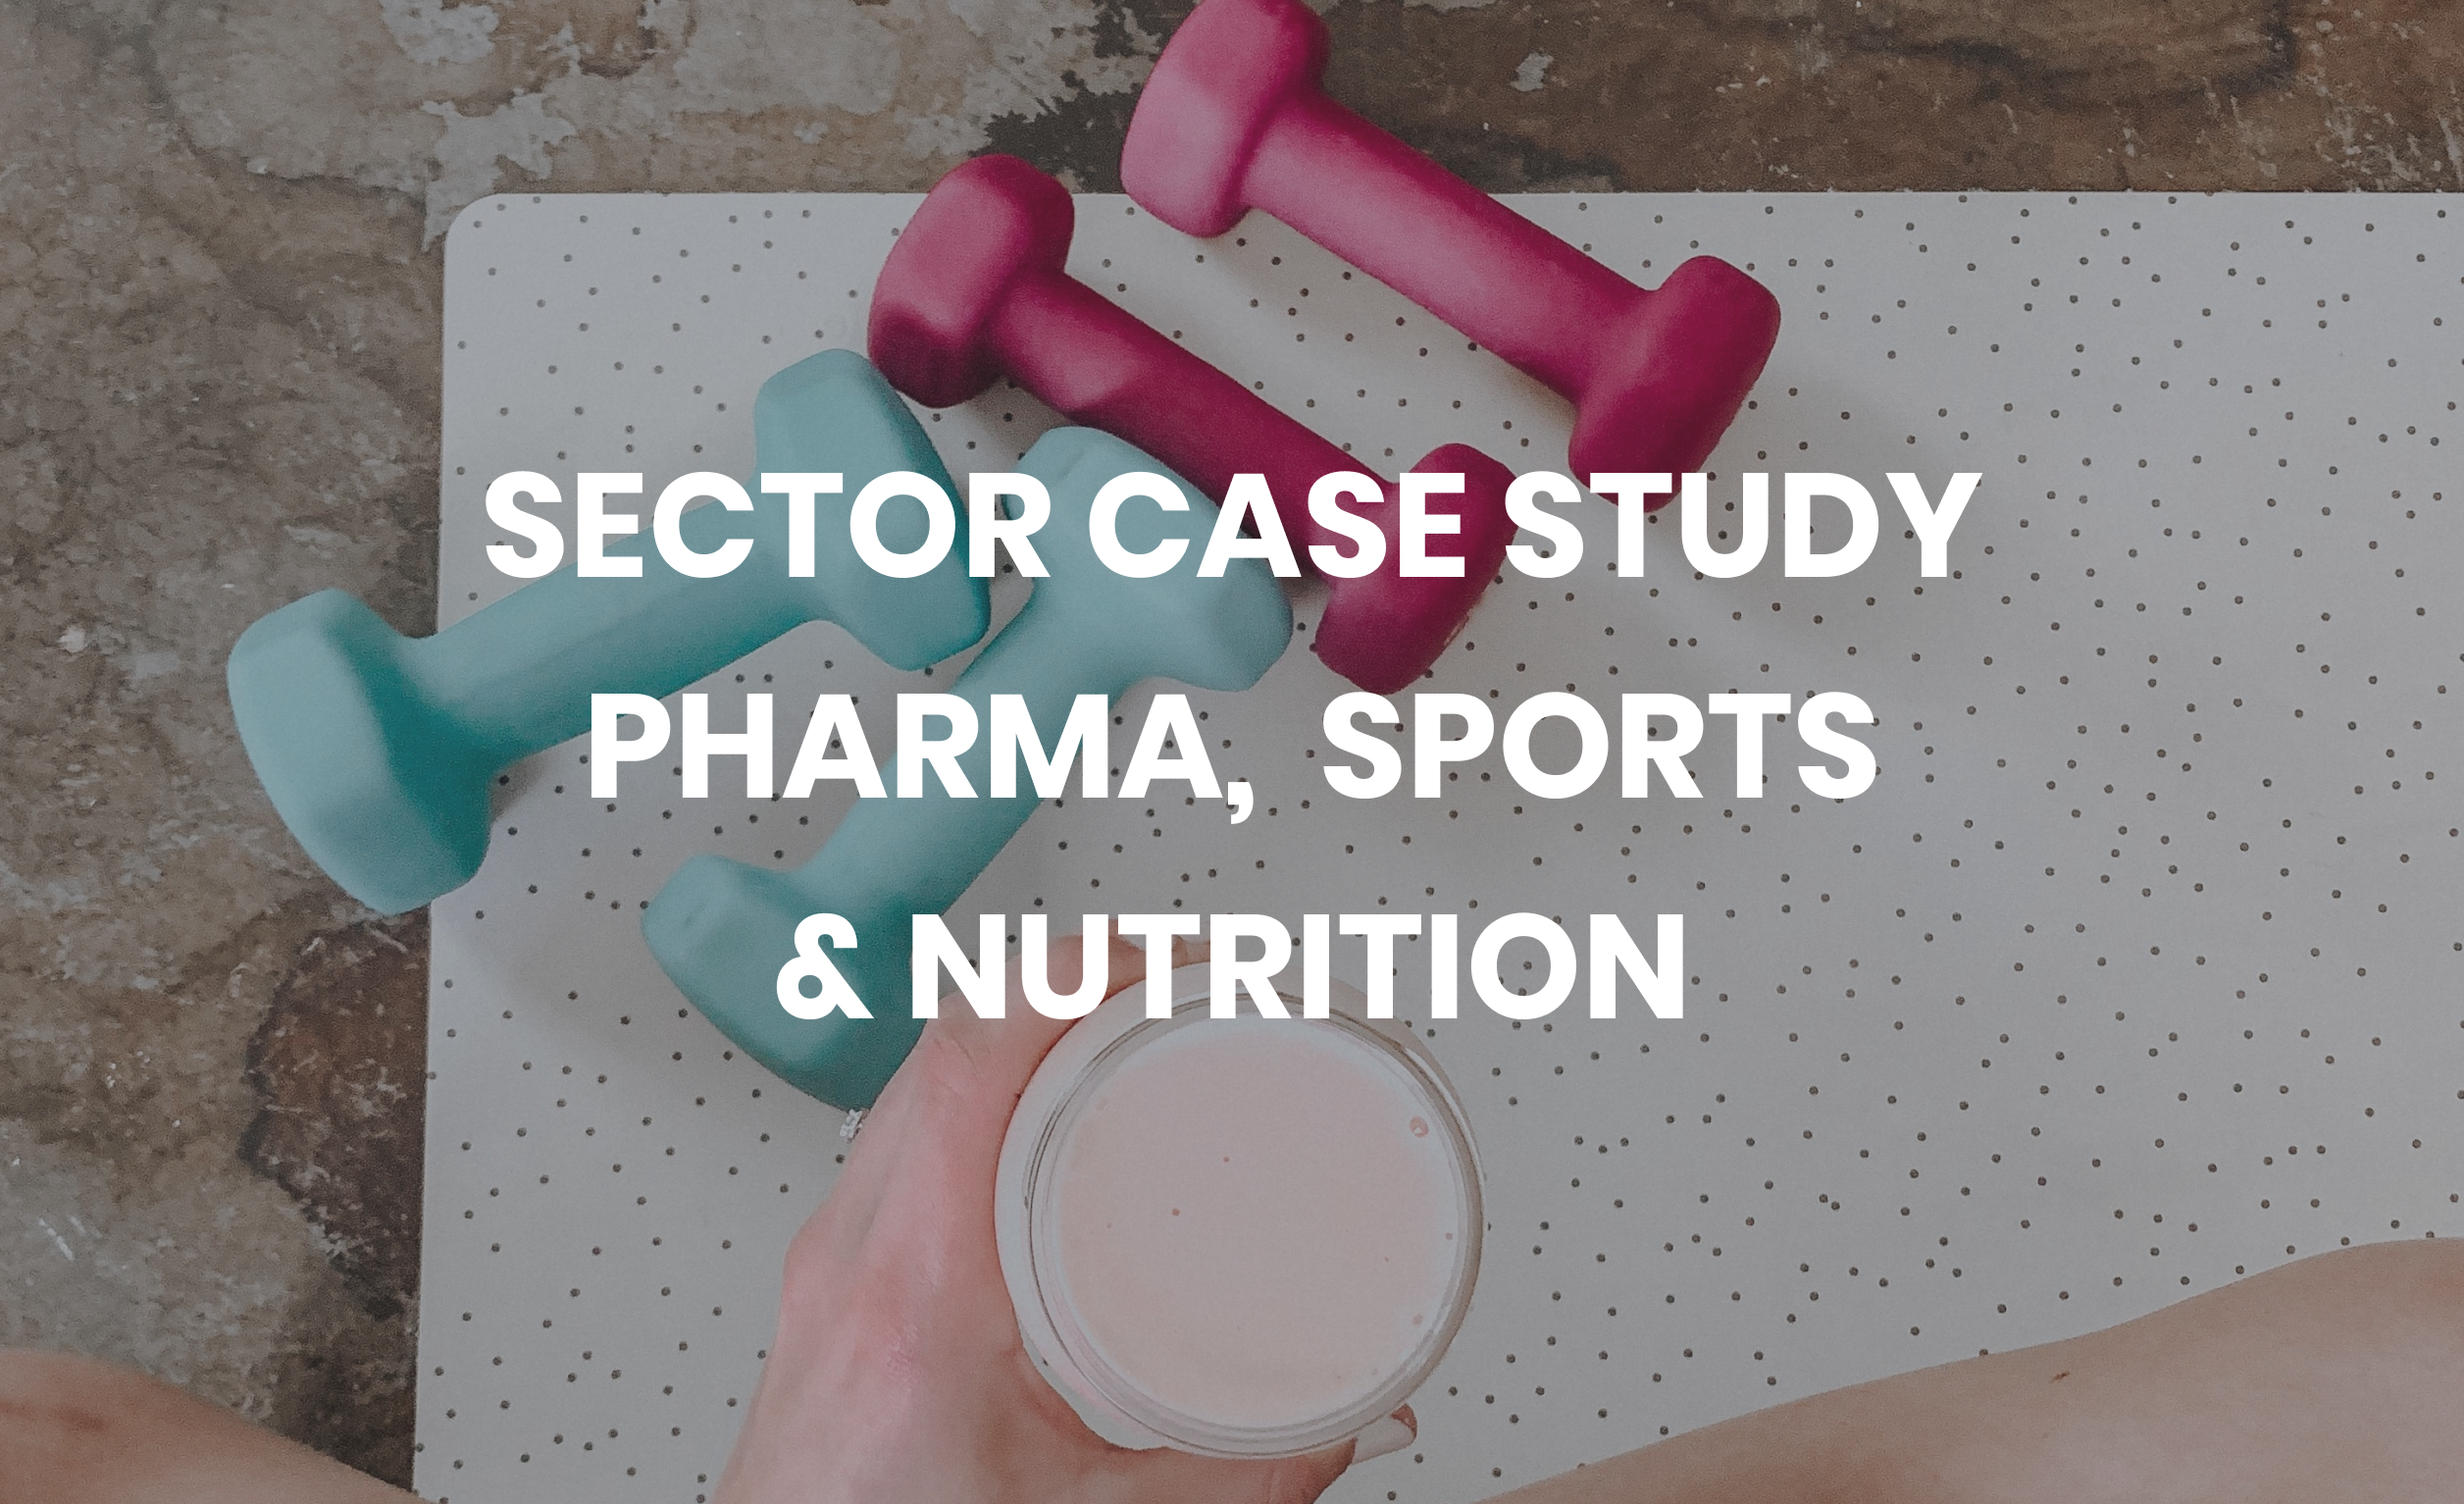 Sector Case Study Pharma, Sport & Nutrition